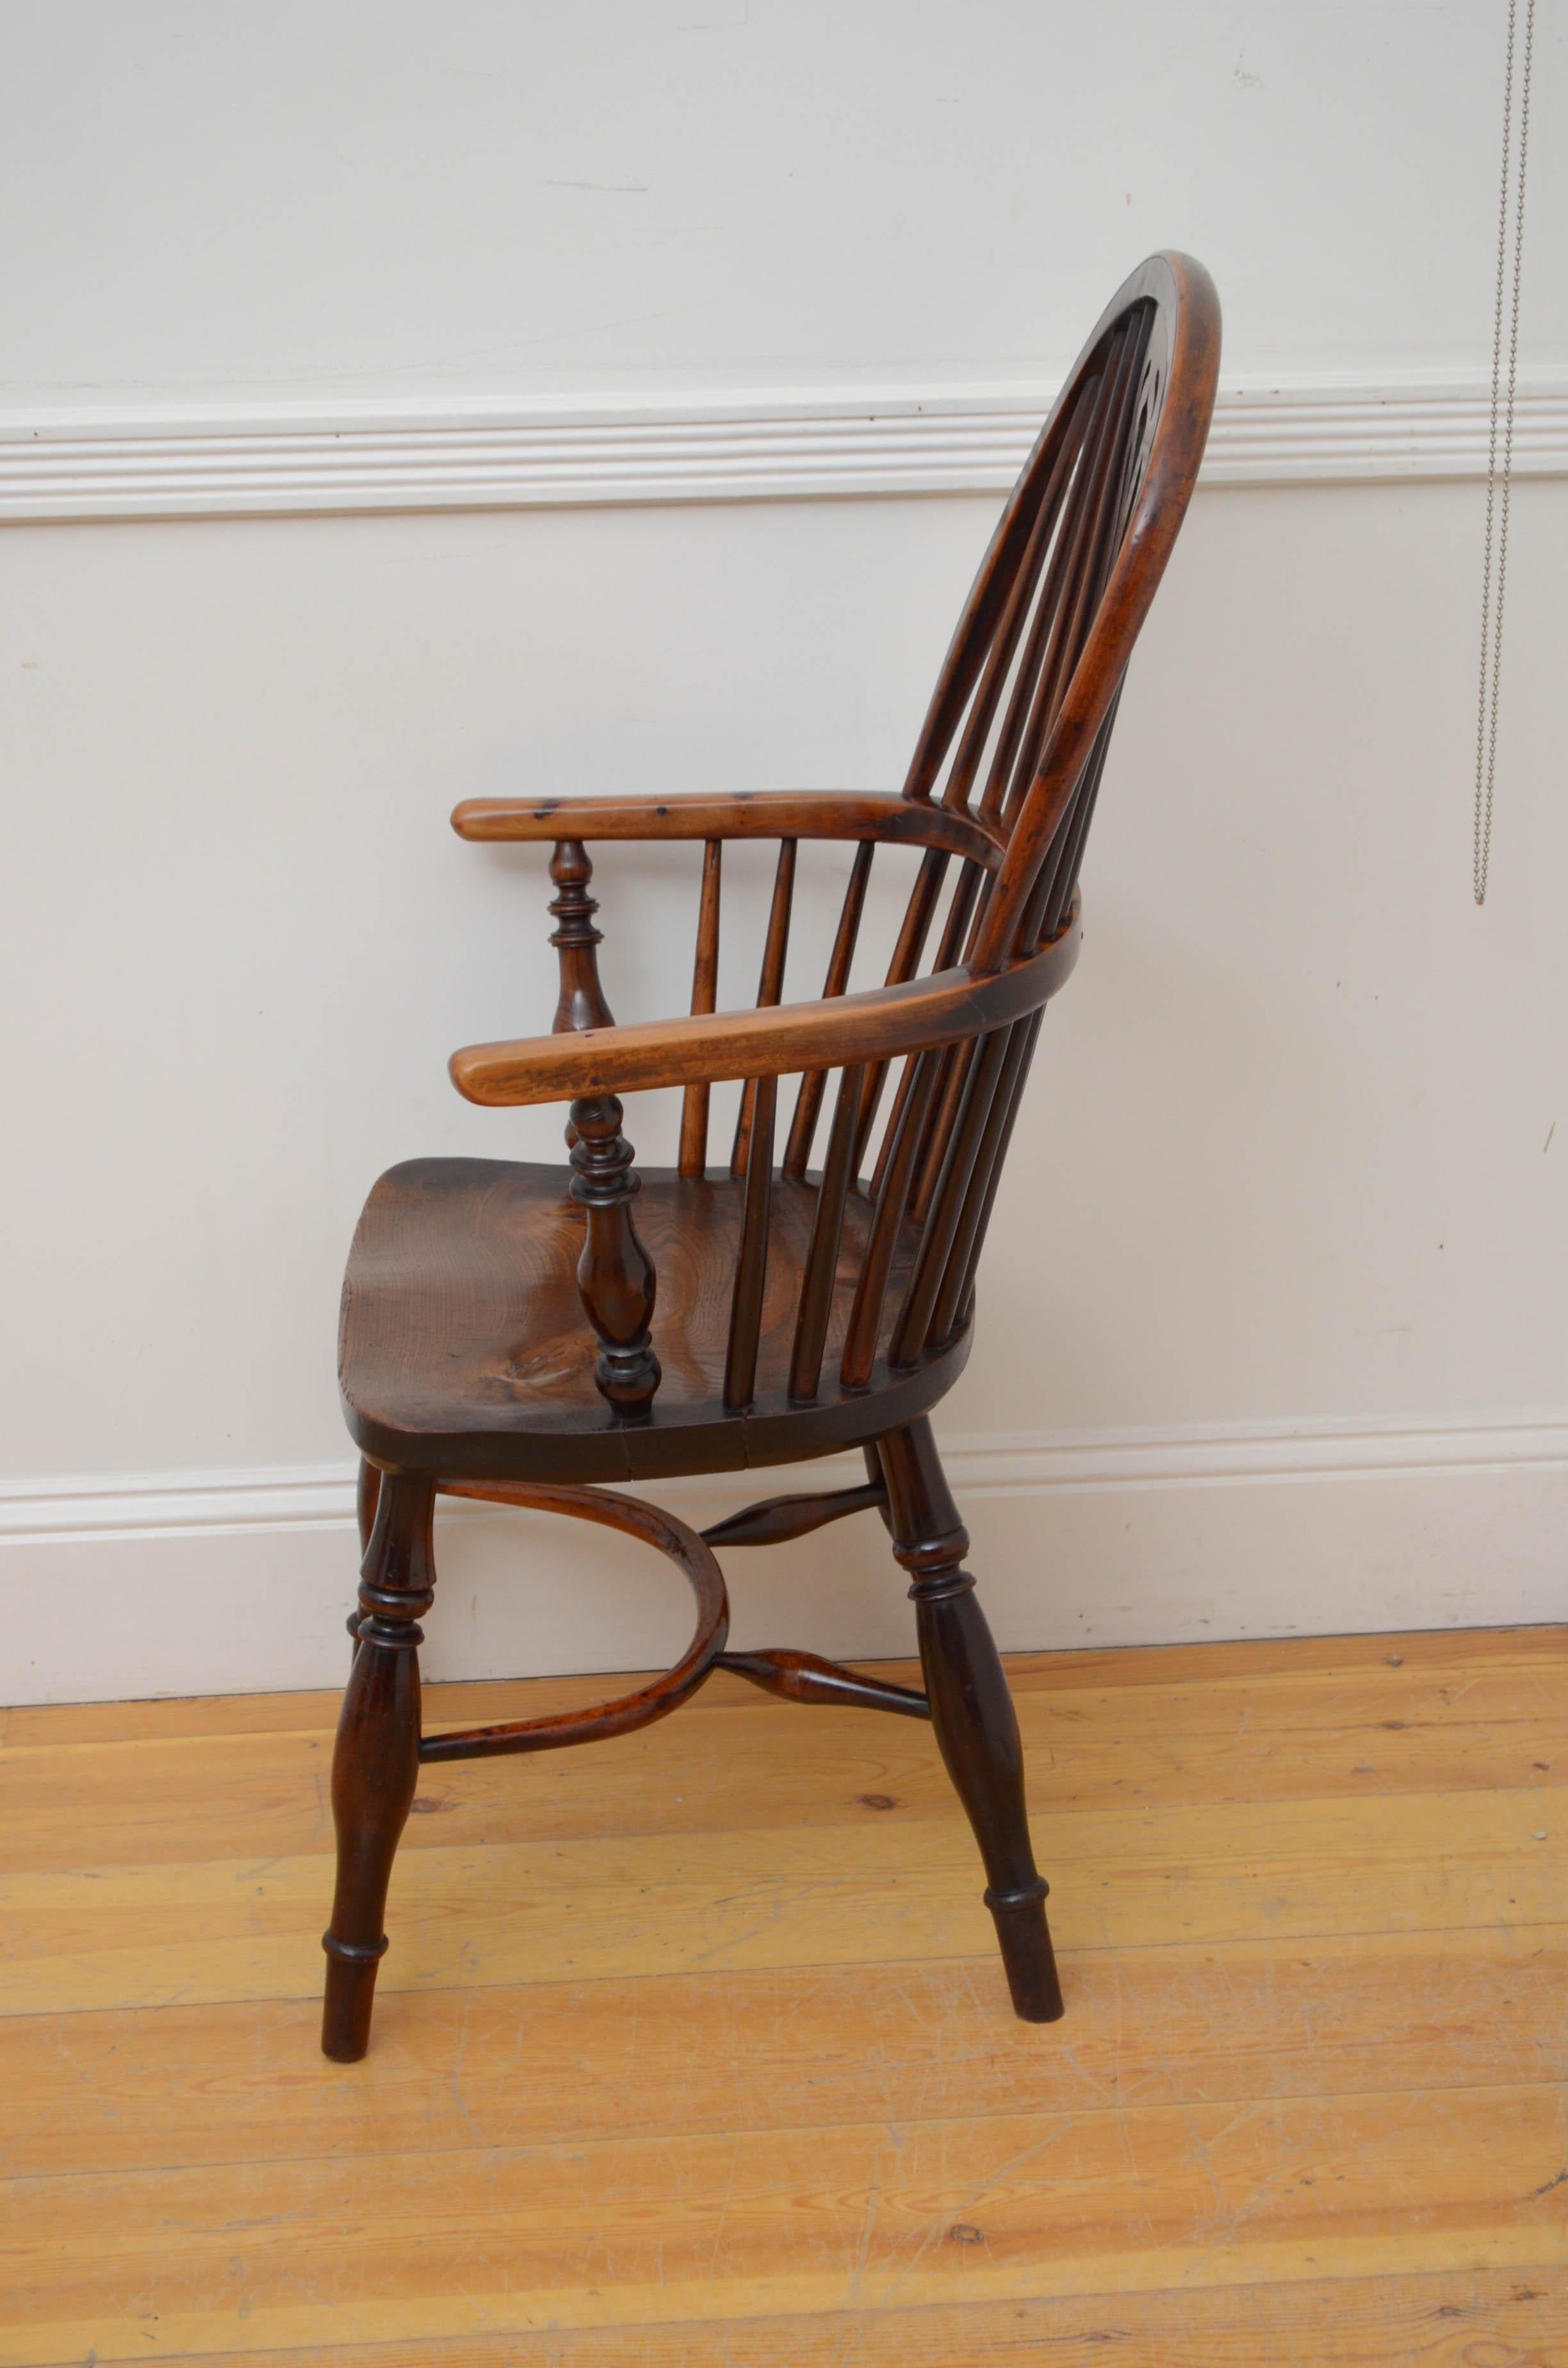 Sn5506 Frühviktorianischer Windsor-Stuhl aus Eiben- und Ulmenholz, mit gewölbter Rückenlehne, flankiert von Spindeln, offenen Armlehnen und geformtem Sitz, auf gedrechselten Beinen, die durch Krinolinenstrecker verbunden sind. Dieser antike Stuhl